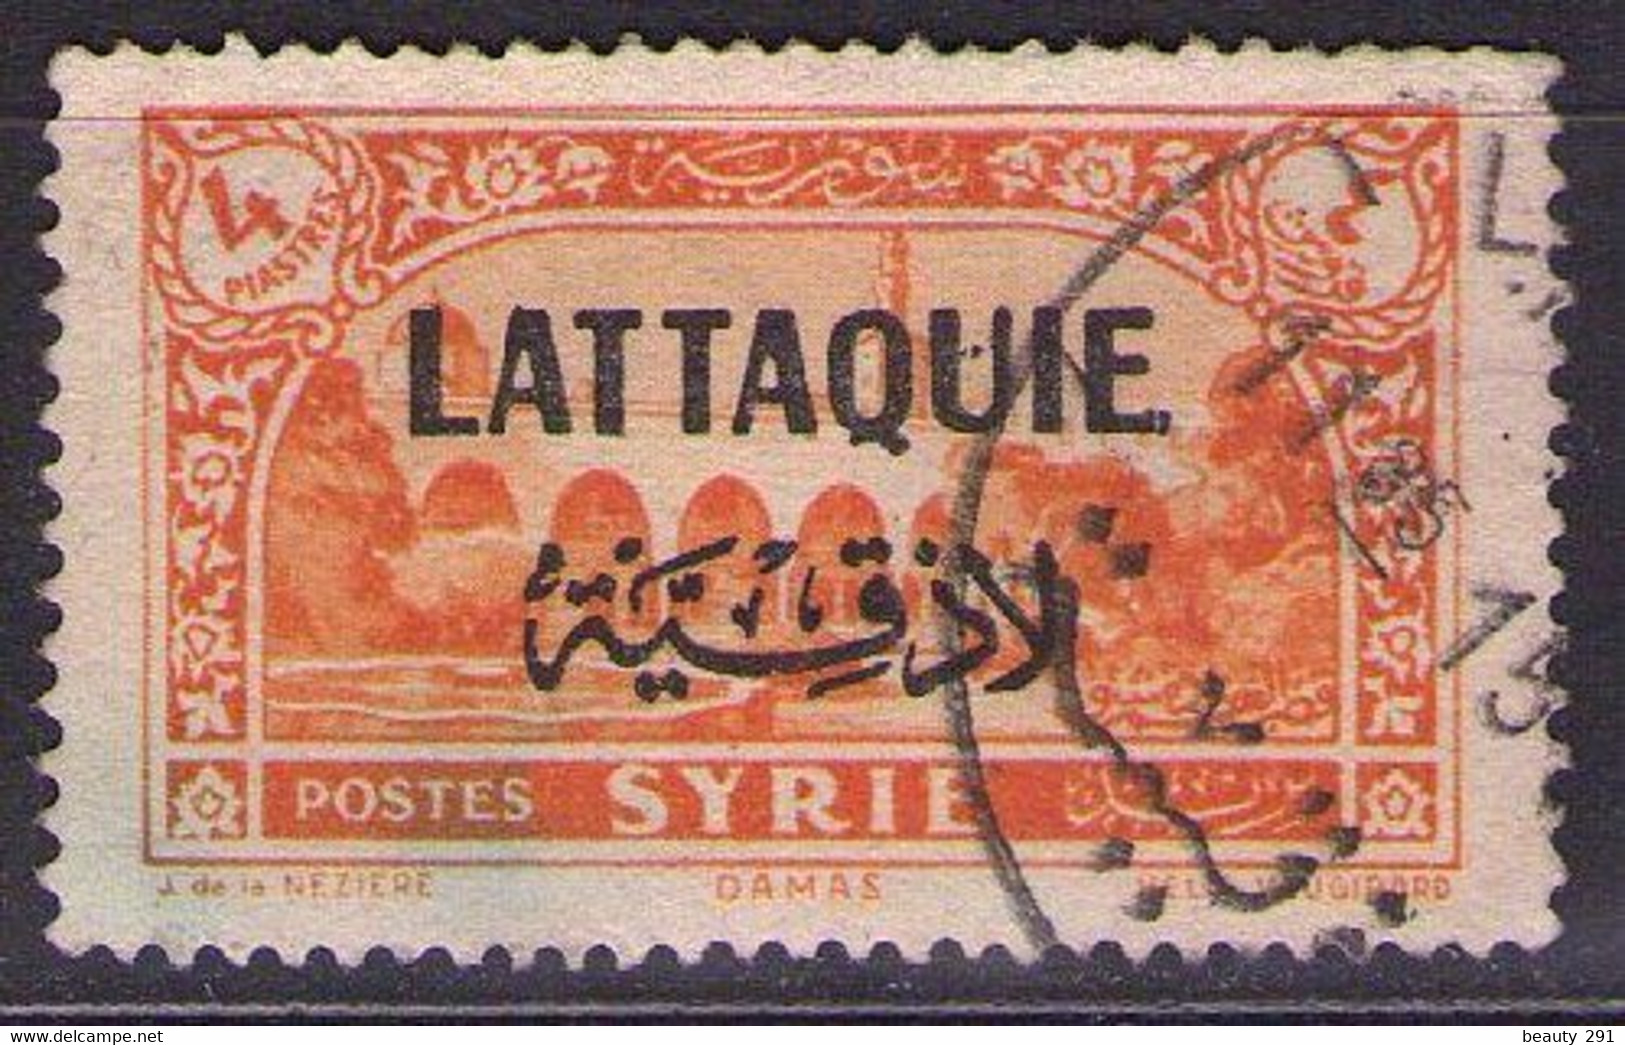 LATTAQUIE - 1931 Mi 14  USED - Used Stamps